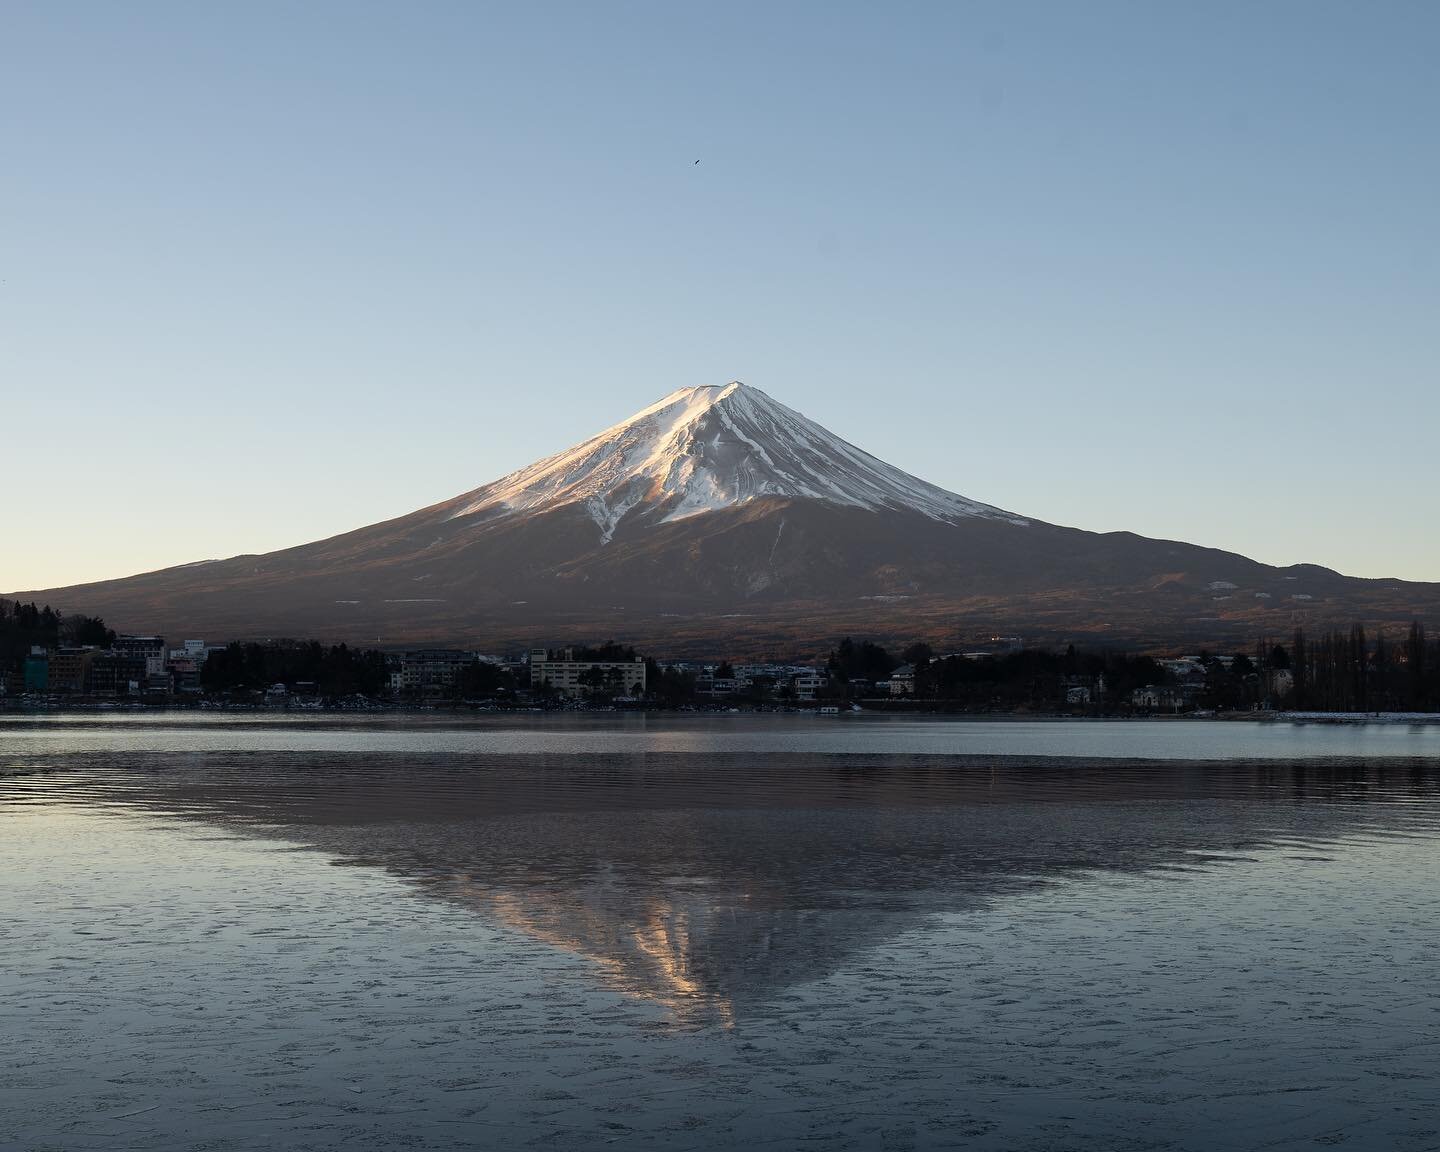 Mount Fuji Sunrise 🗻

Should I sell my prints?